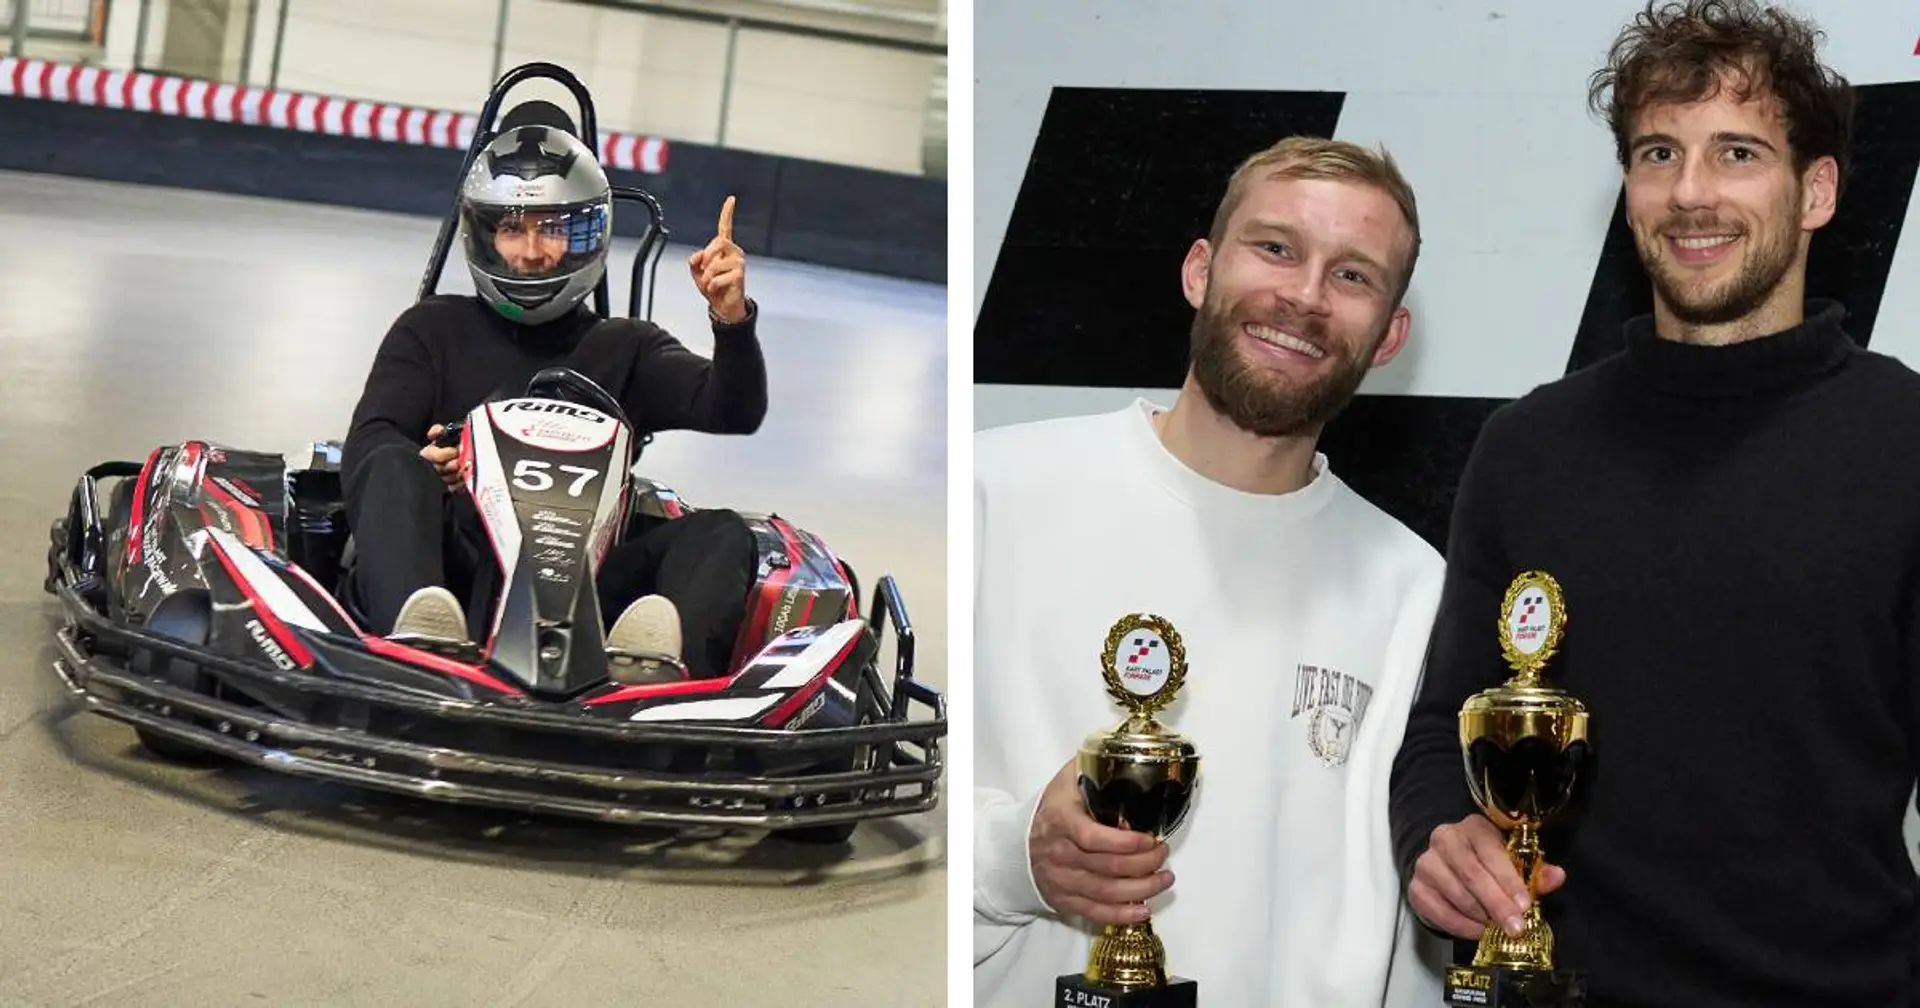 Frust ist weg: Leon Goretzka gewinnt Elektro-Kartfahren und lächelt wieder!